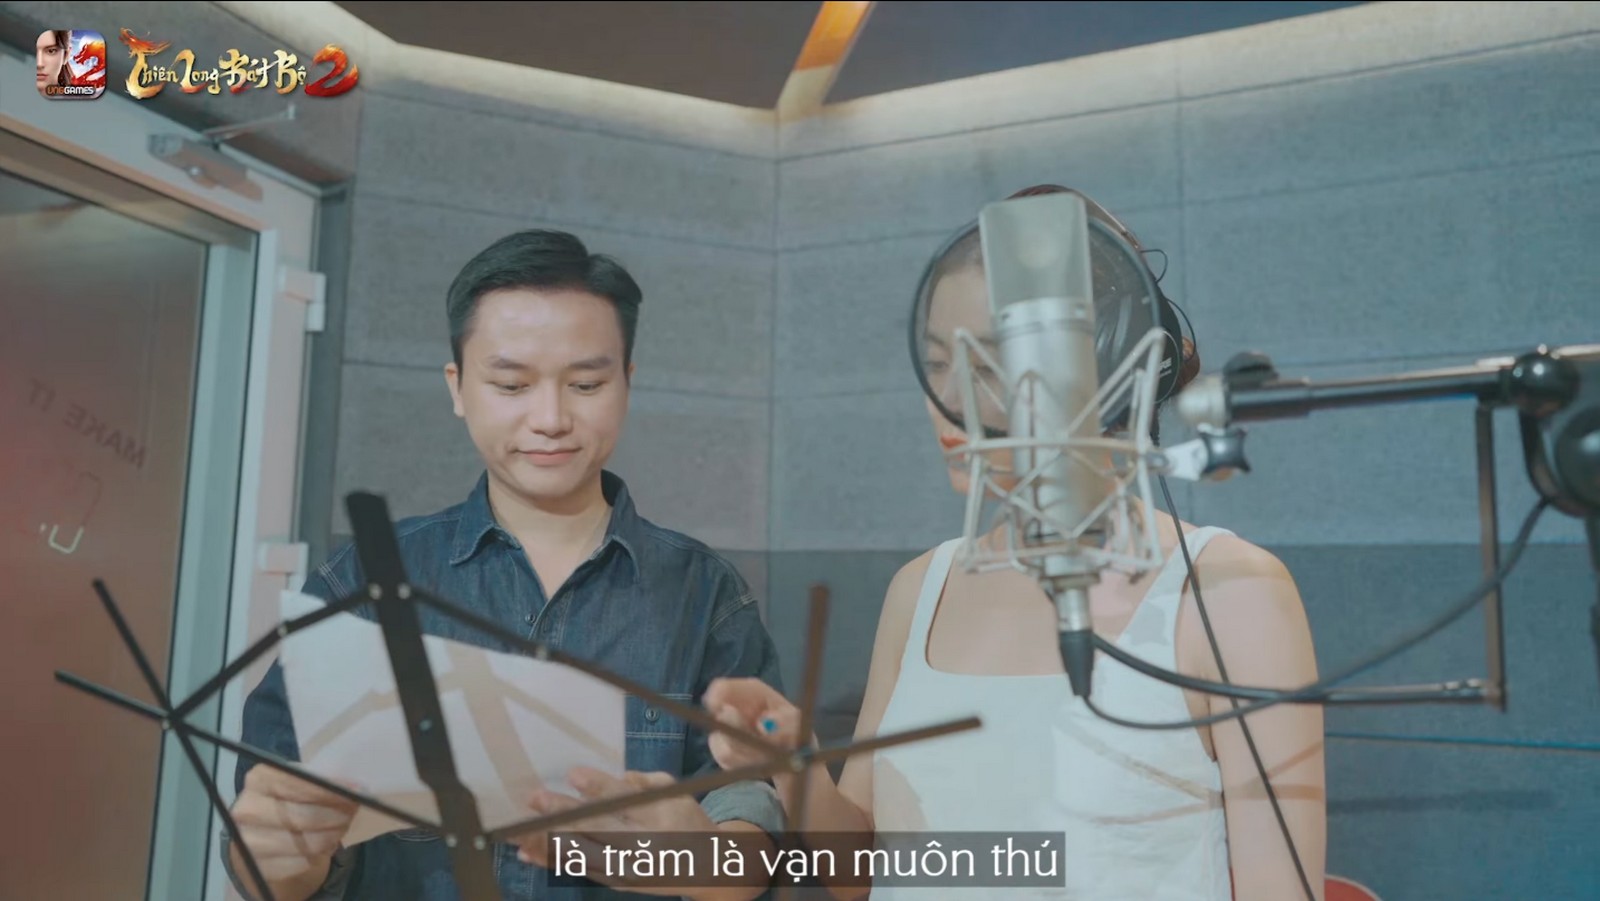 Thiên Long Bát Bộ 2 VNG tung ra ca khúc chủ đề ấn tượng